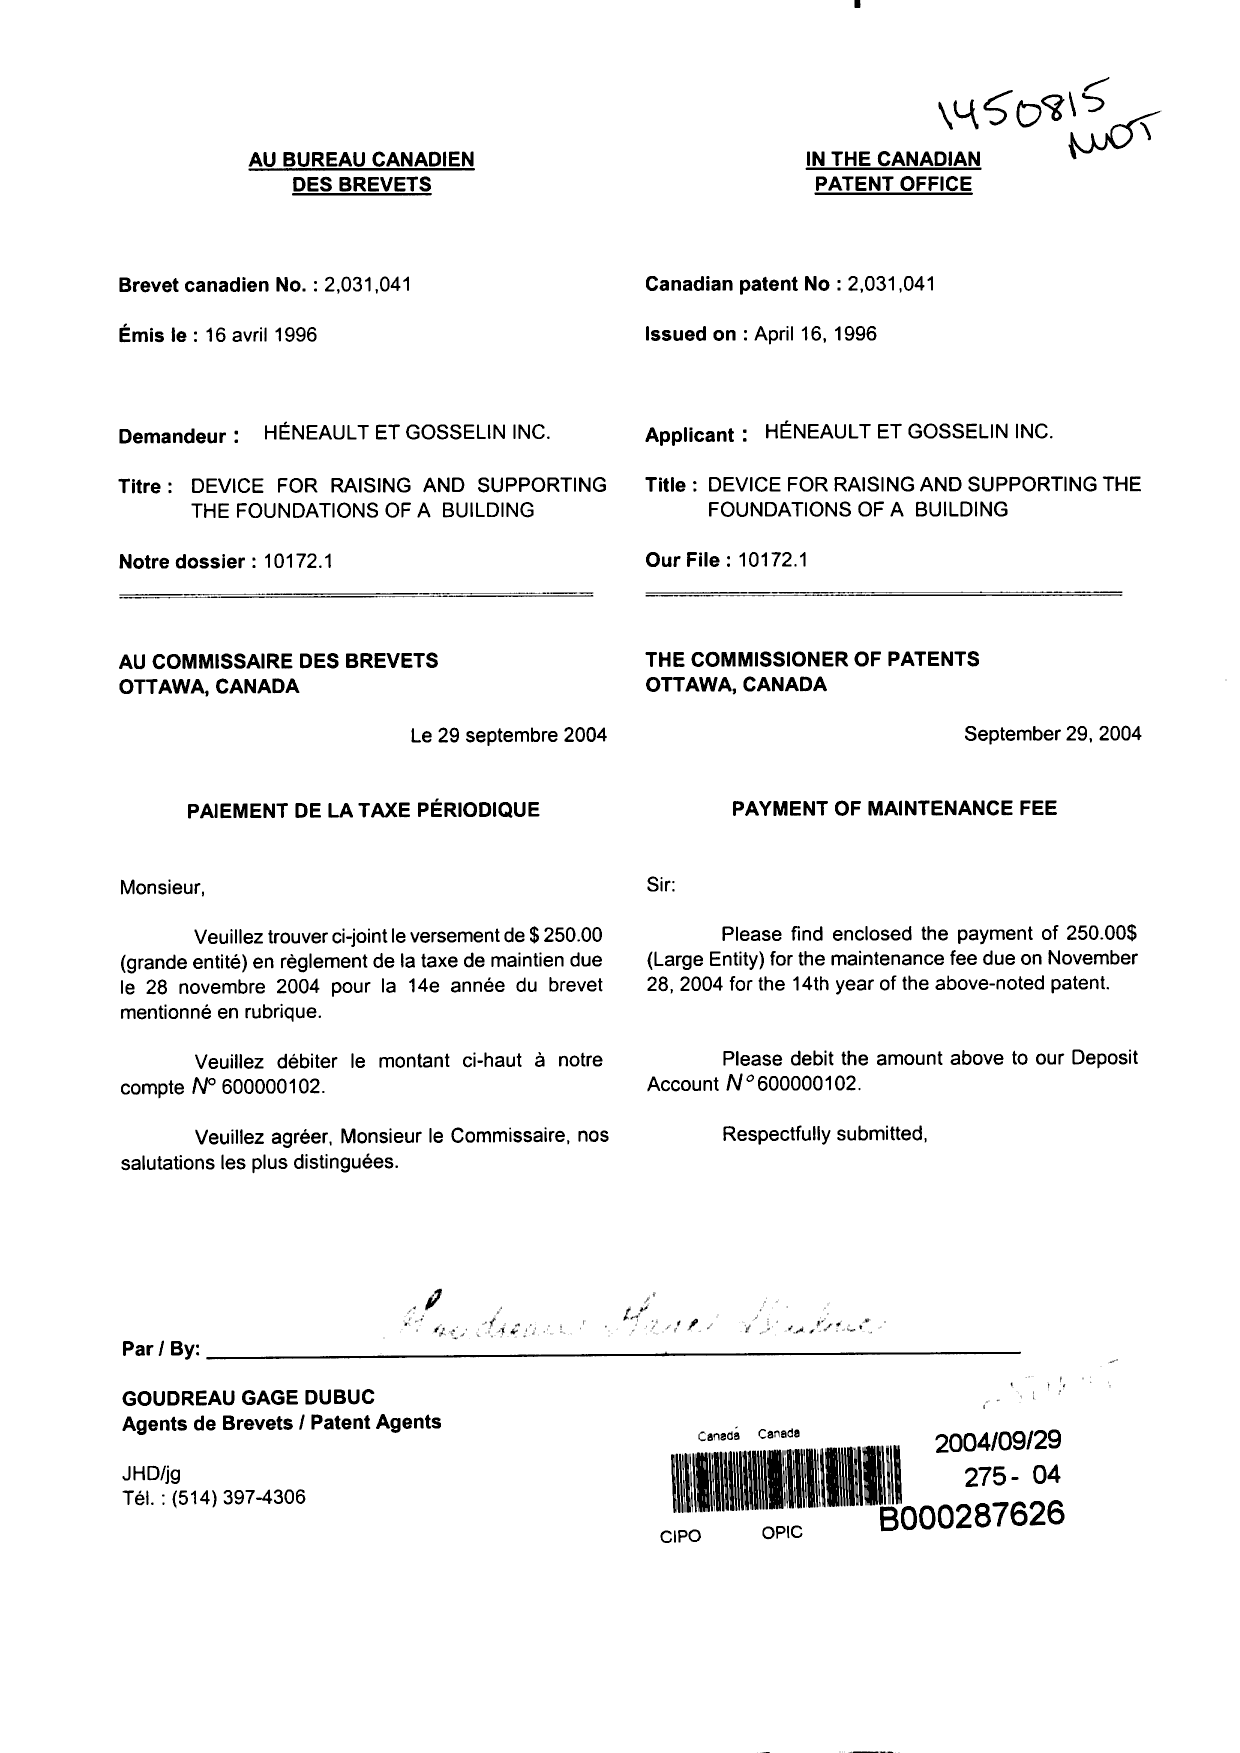 Document de brevet canadien 2031041. Taxes 20031229. Image 1 de 1